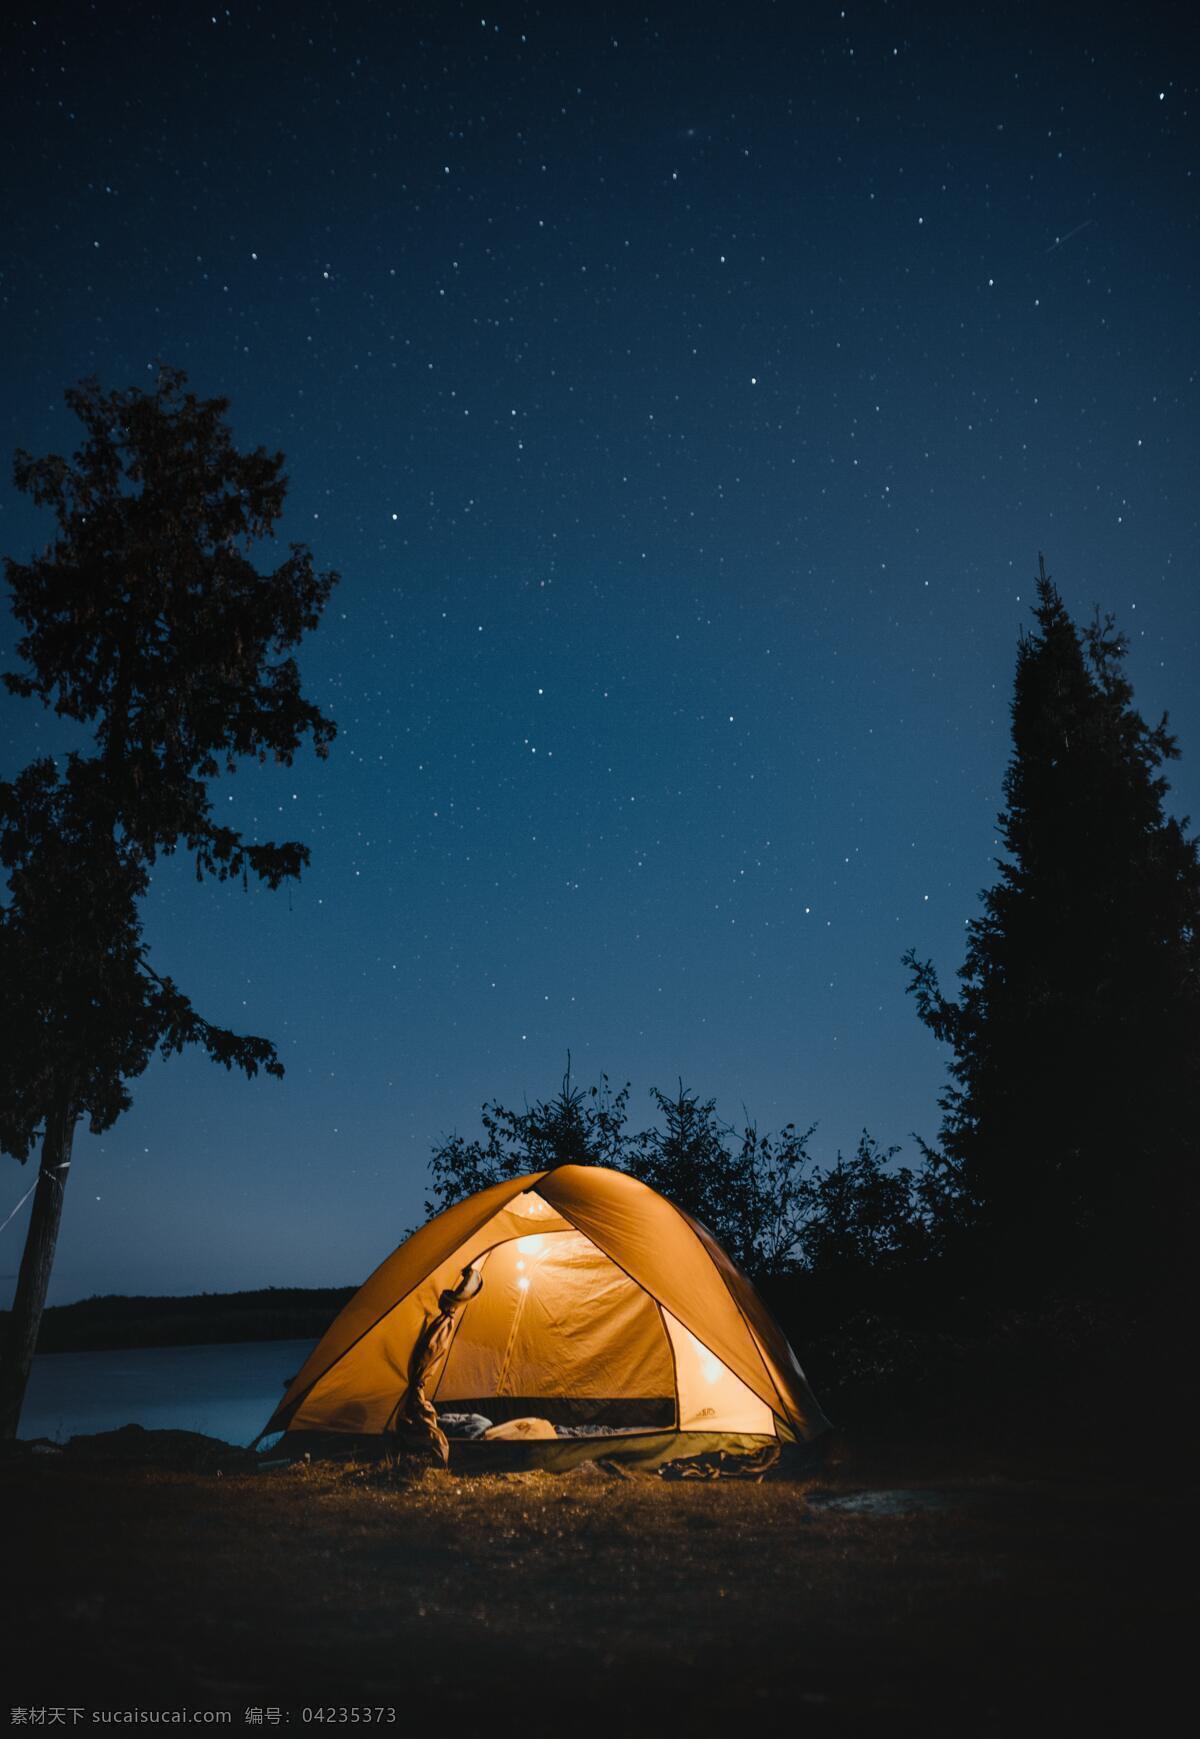 野营 帐篷 夜空 森林 营地 共享 旅游摄影 国外旅游 旅行风景摄影